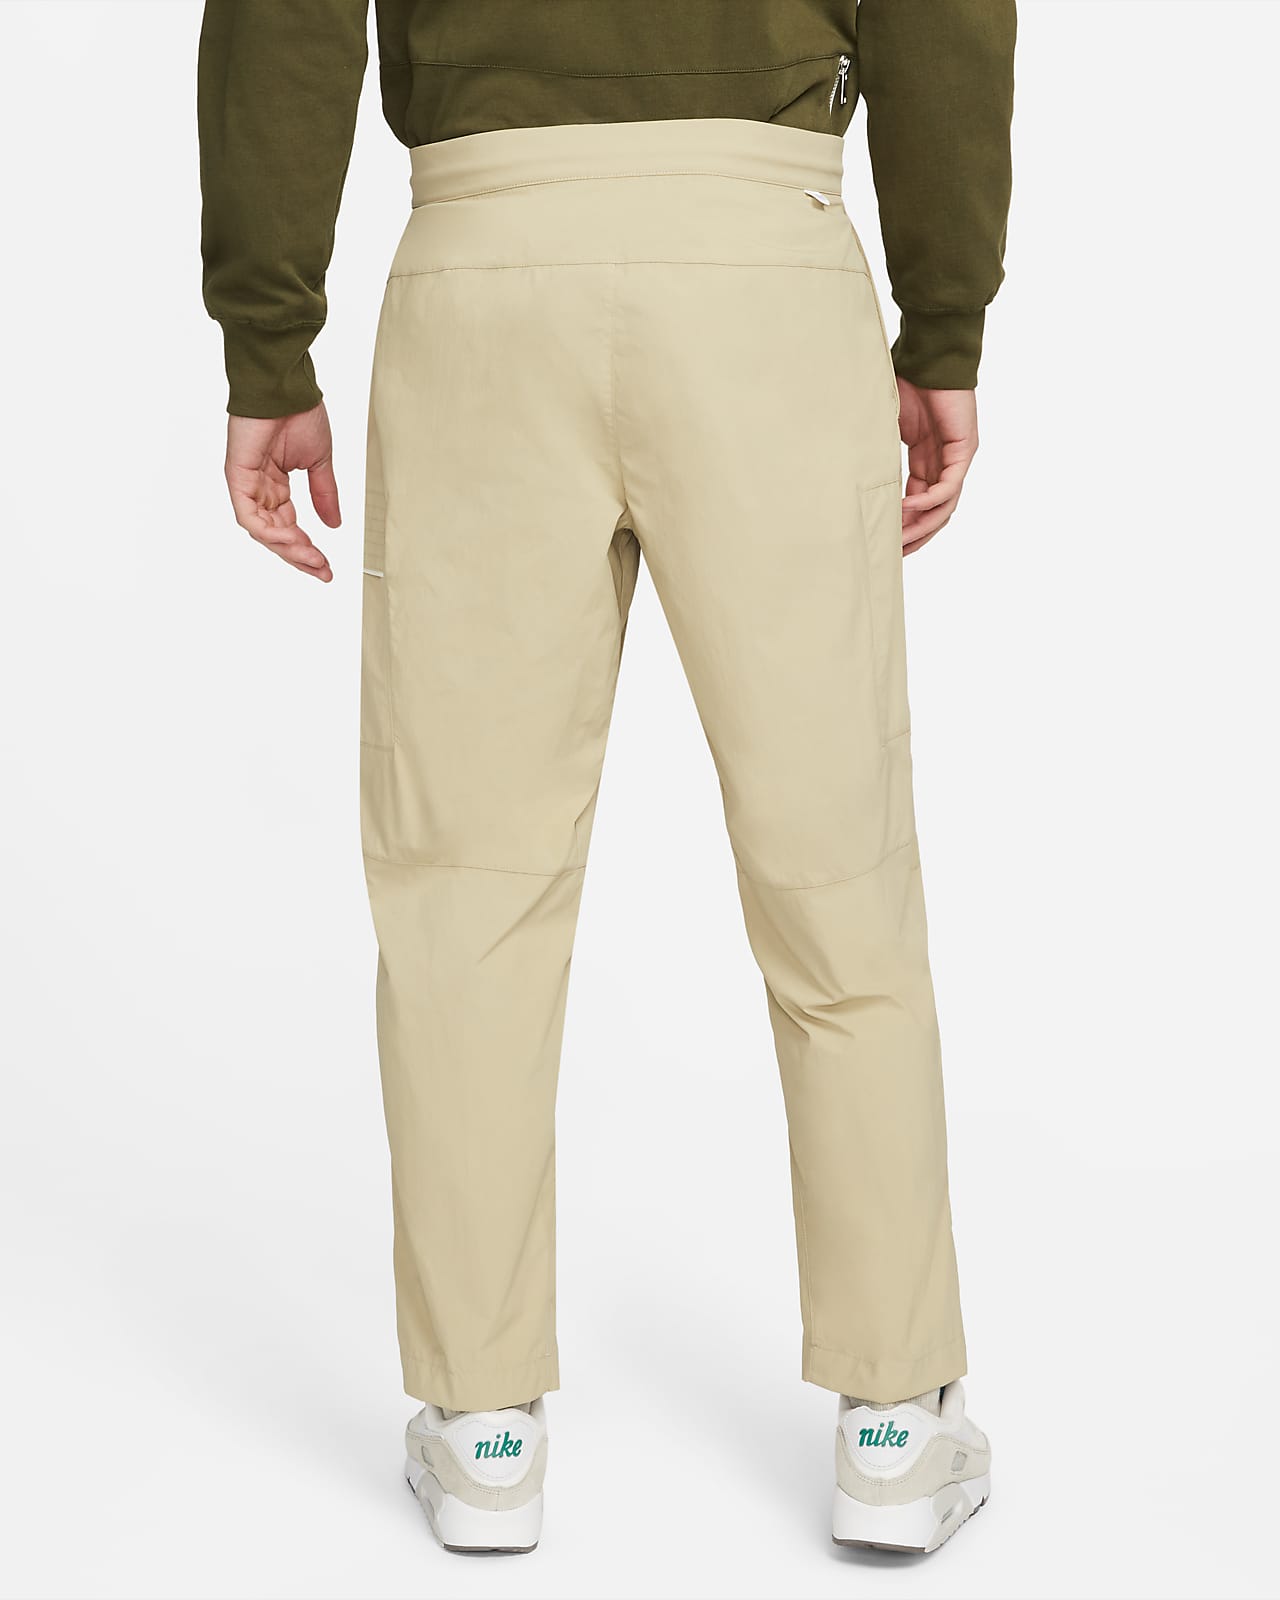 Style Sportswear Pants. Essentials Nike Men\'s Utility